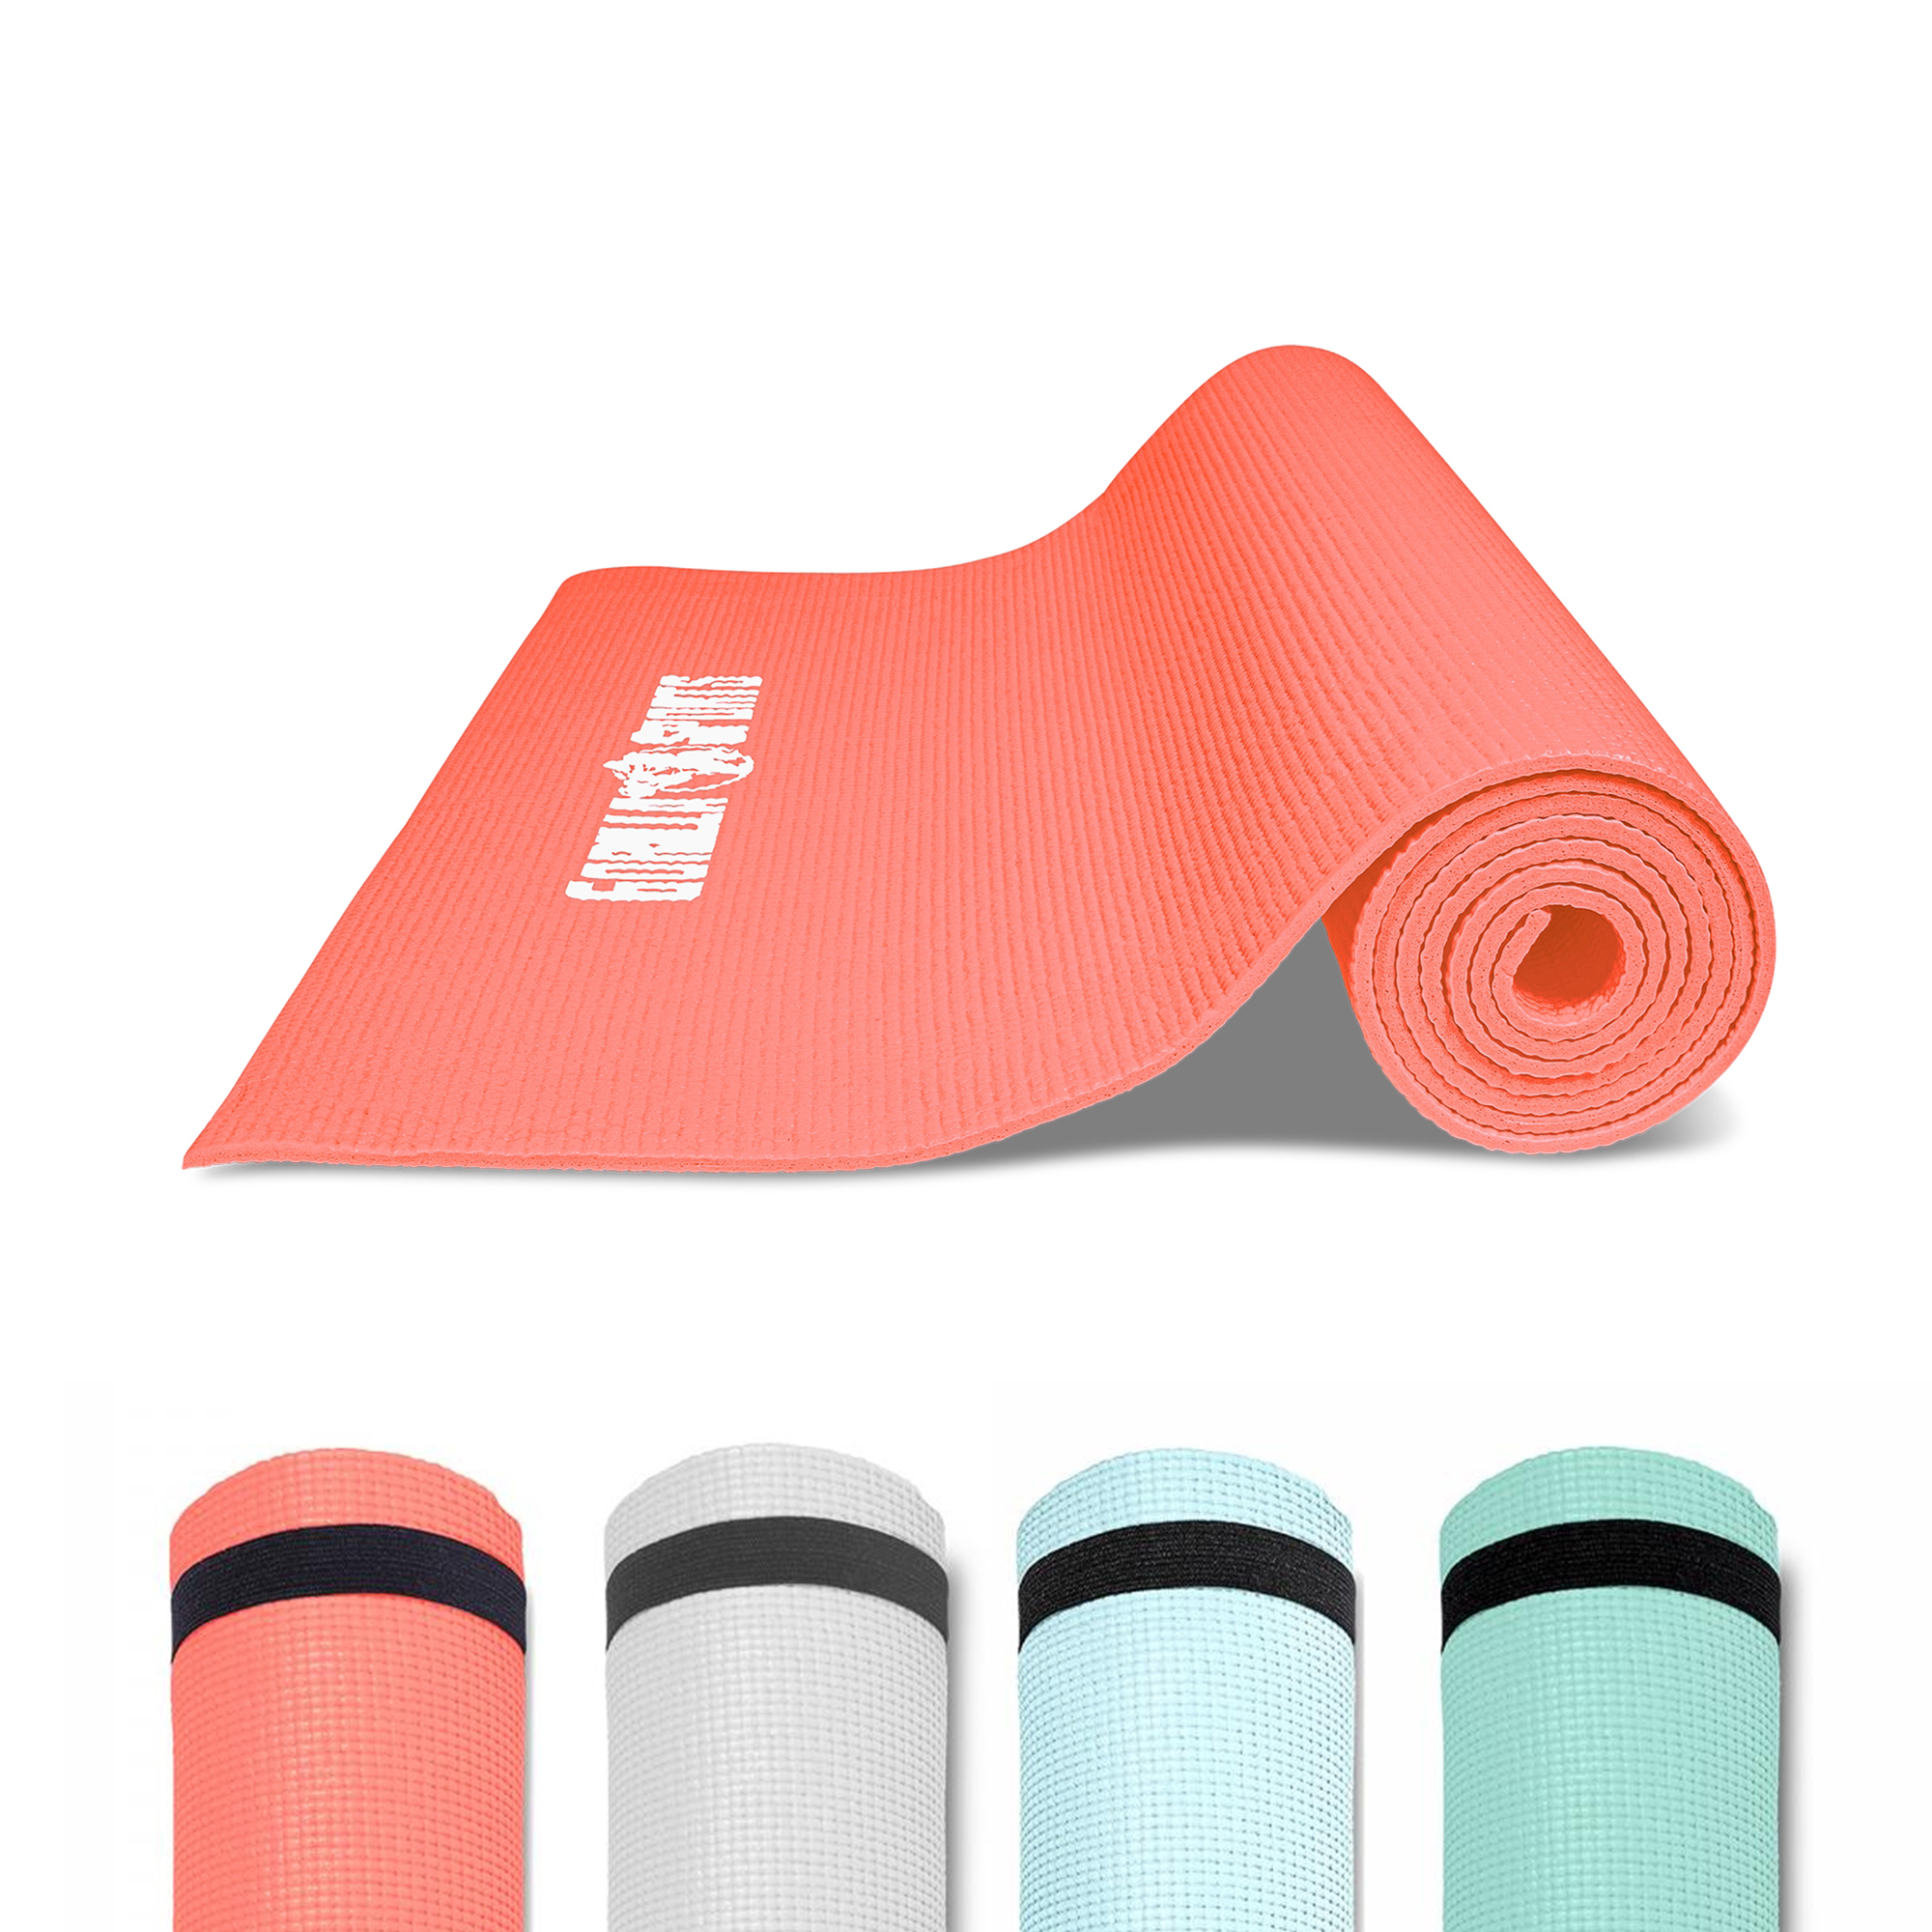 GORILLA SPORTS Â® Tapis de yoga PVC Corail - 180 x 60 x 0,5 cm | tapis de gymnastique avec sangle de voyage pour le yoga, le pilates et le fitness